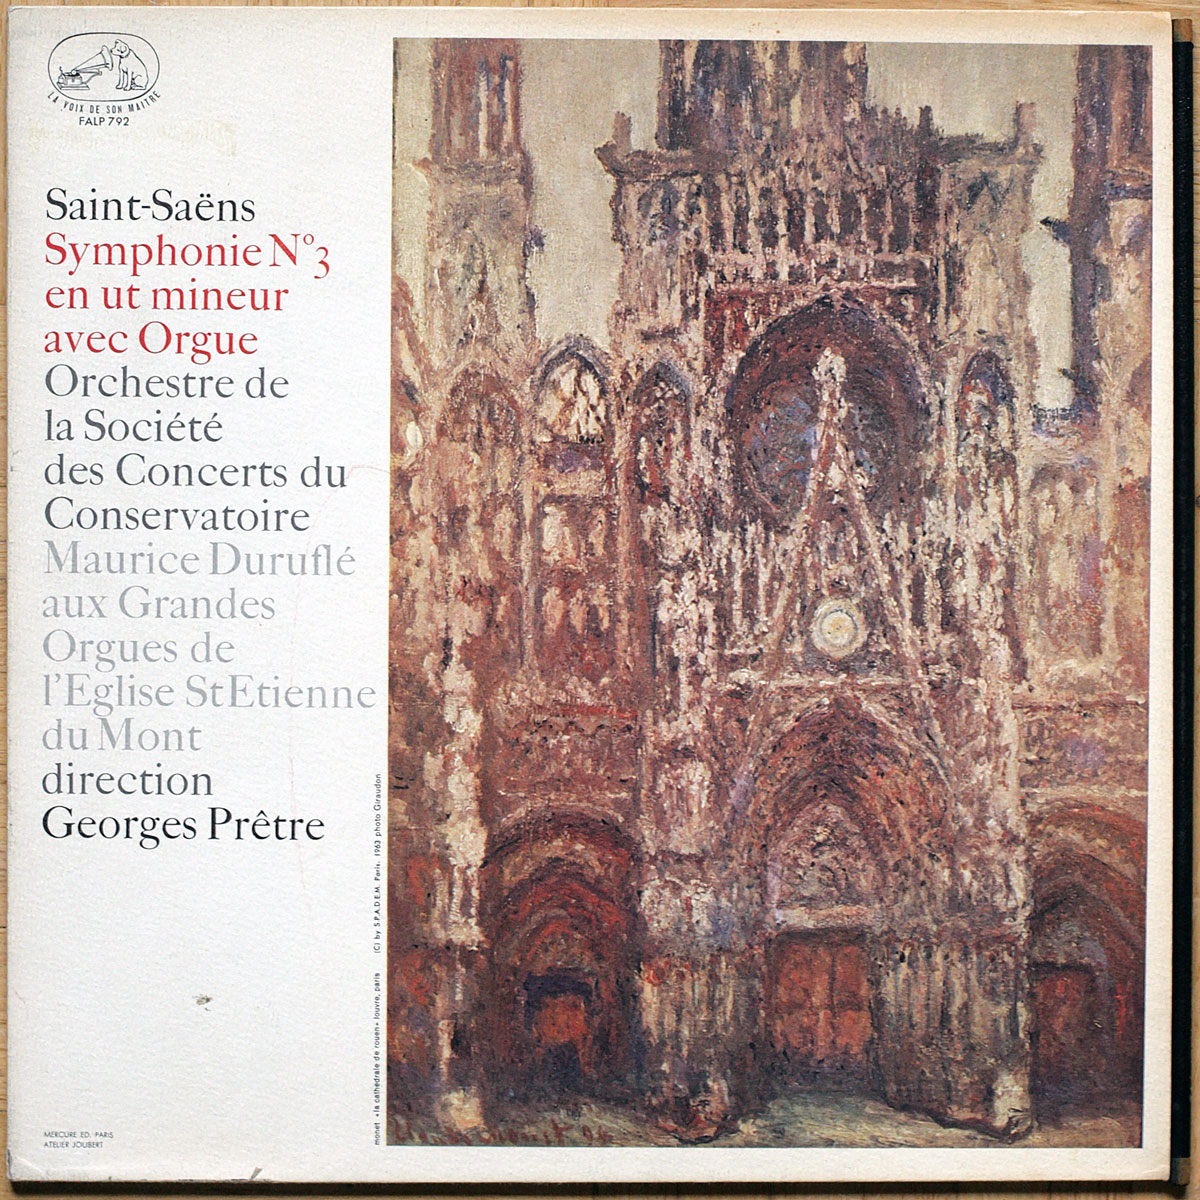 Saint-Saëns • Symphonie n° 3 en ut mineur avec orgue • ASDF 792 • Maurice Duruflé • Orchestre de la Société des Concerts du Conservatoire • Georges Prêtre